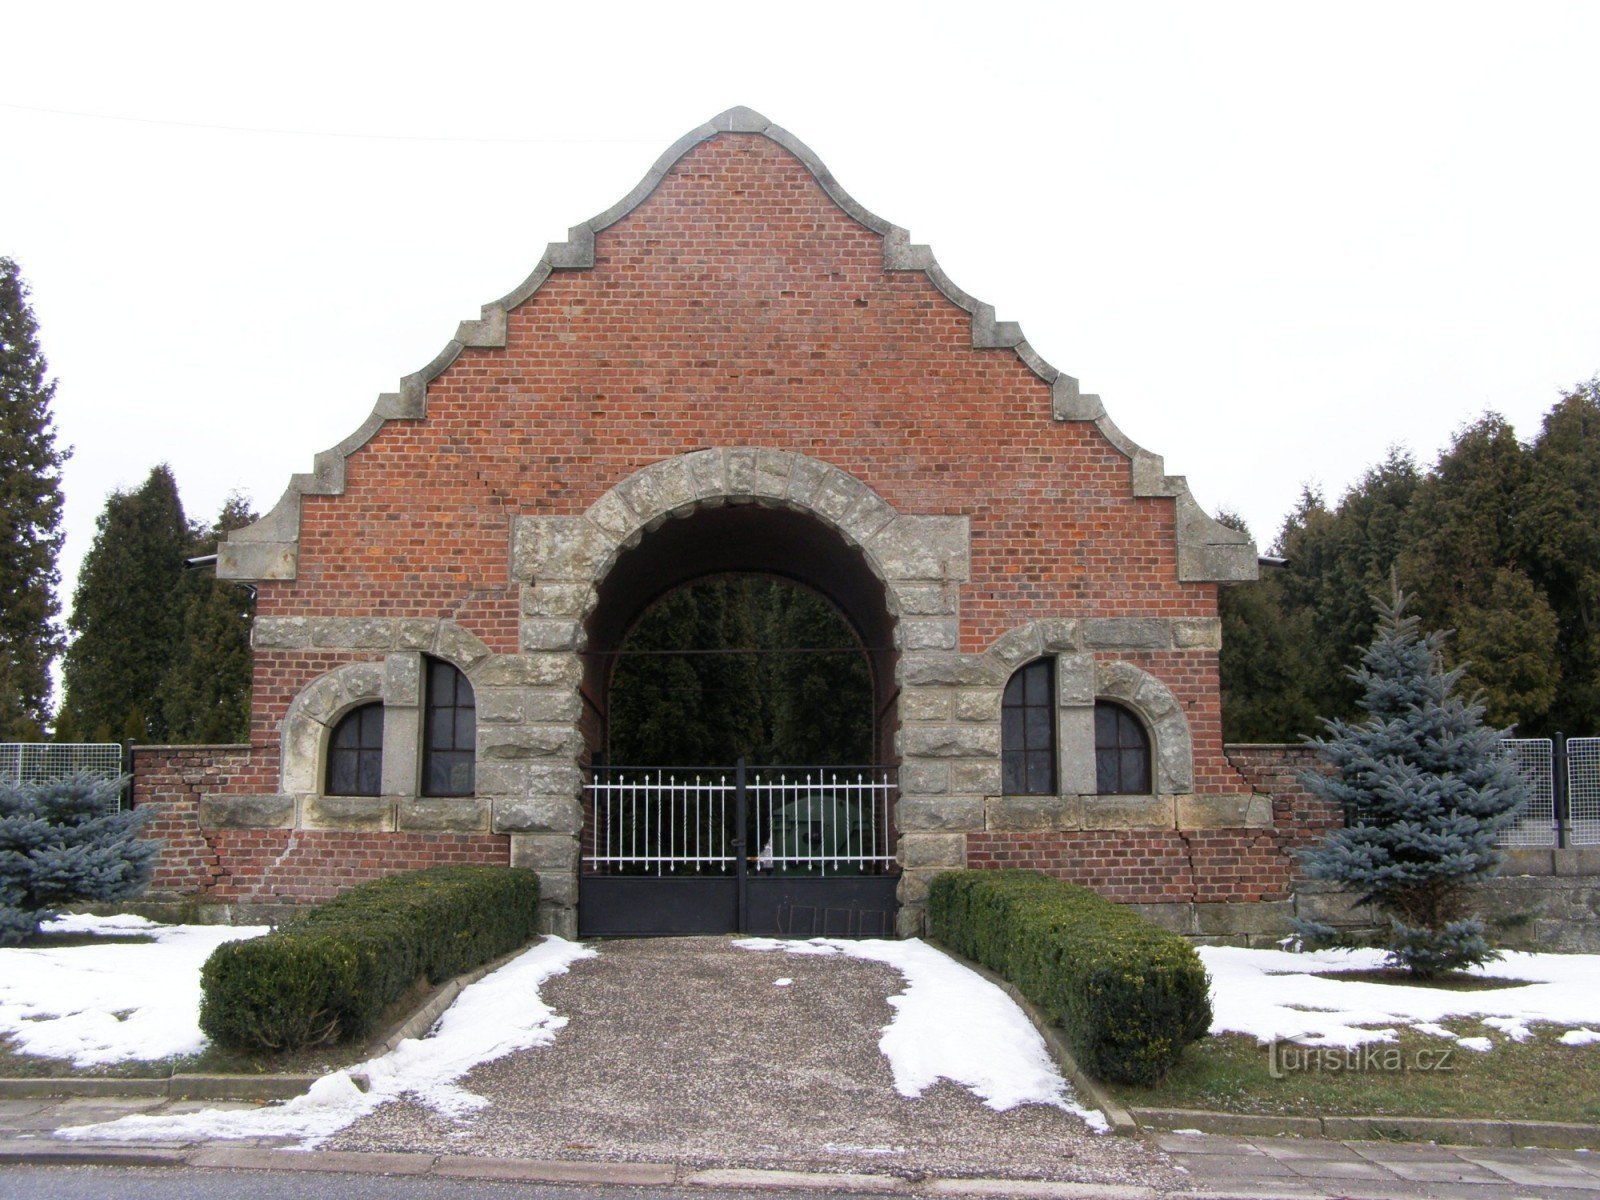 Staré Smrkovice - a temető eleje